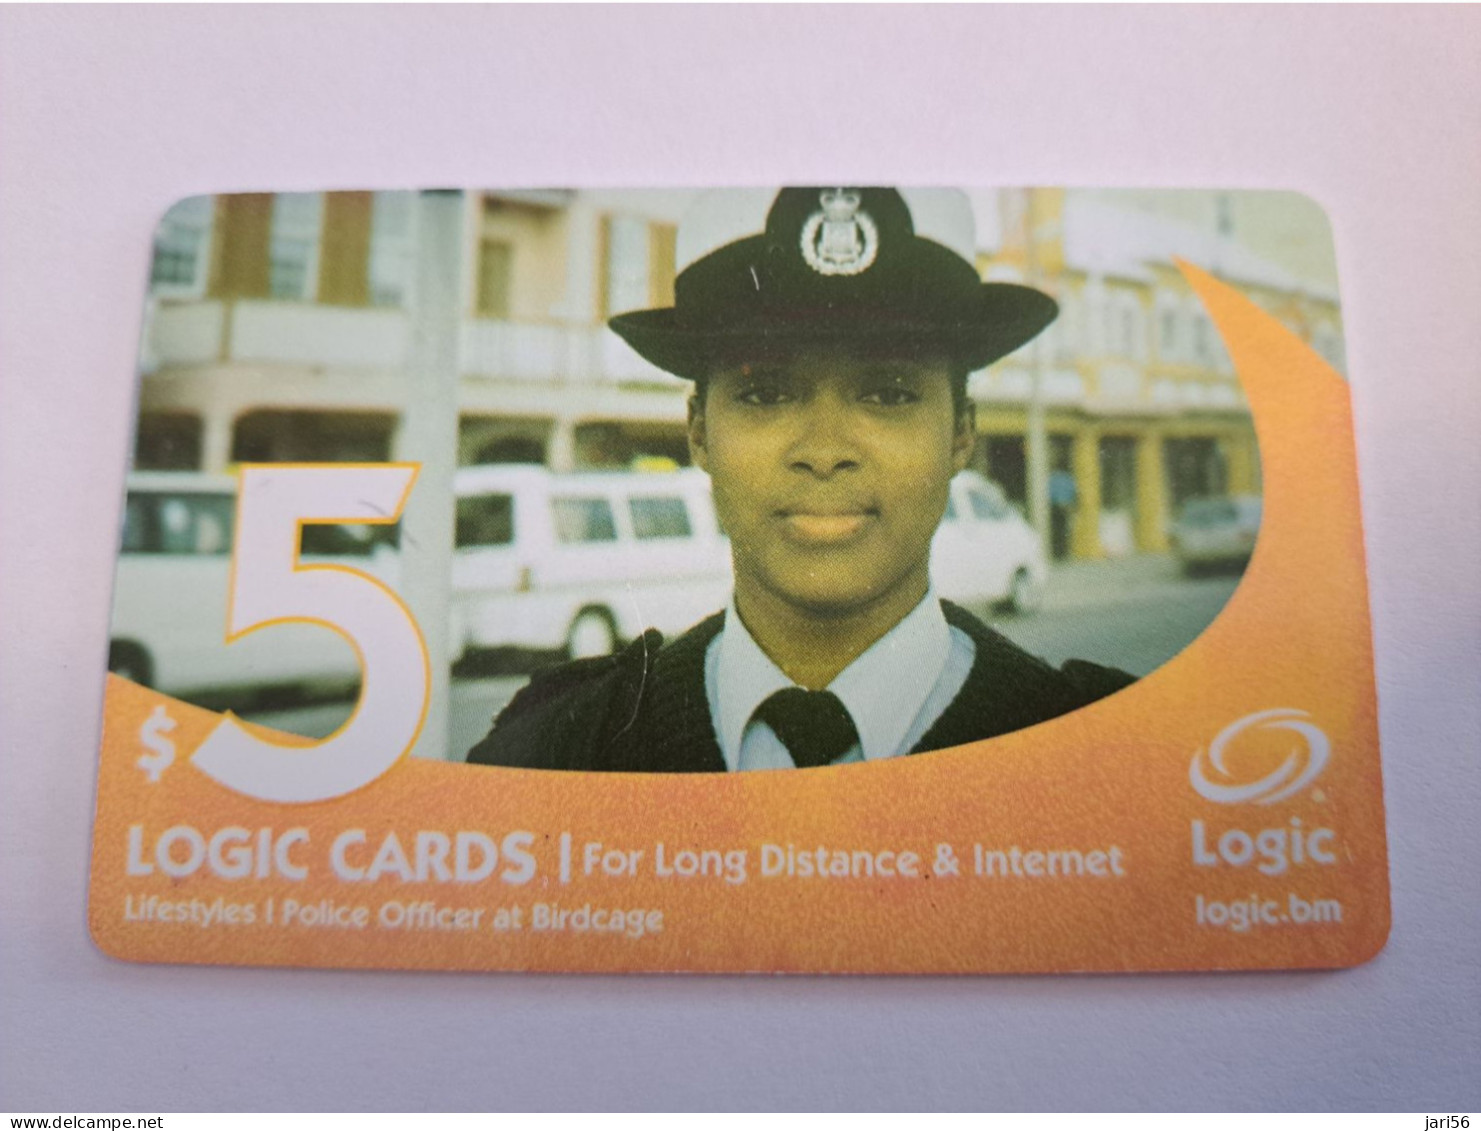 BERMUDA  $ 5,-  LOGIC/  POLICE LADY   IN BERMUDA / DATE 4 /2005 / 9700 EX   PREPAID CARD  Fine USED  **16193** - Bermuda